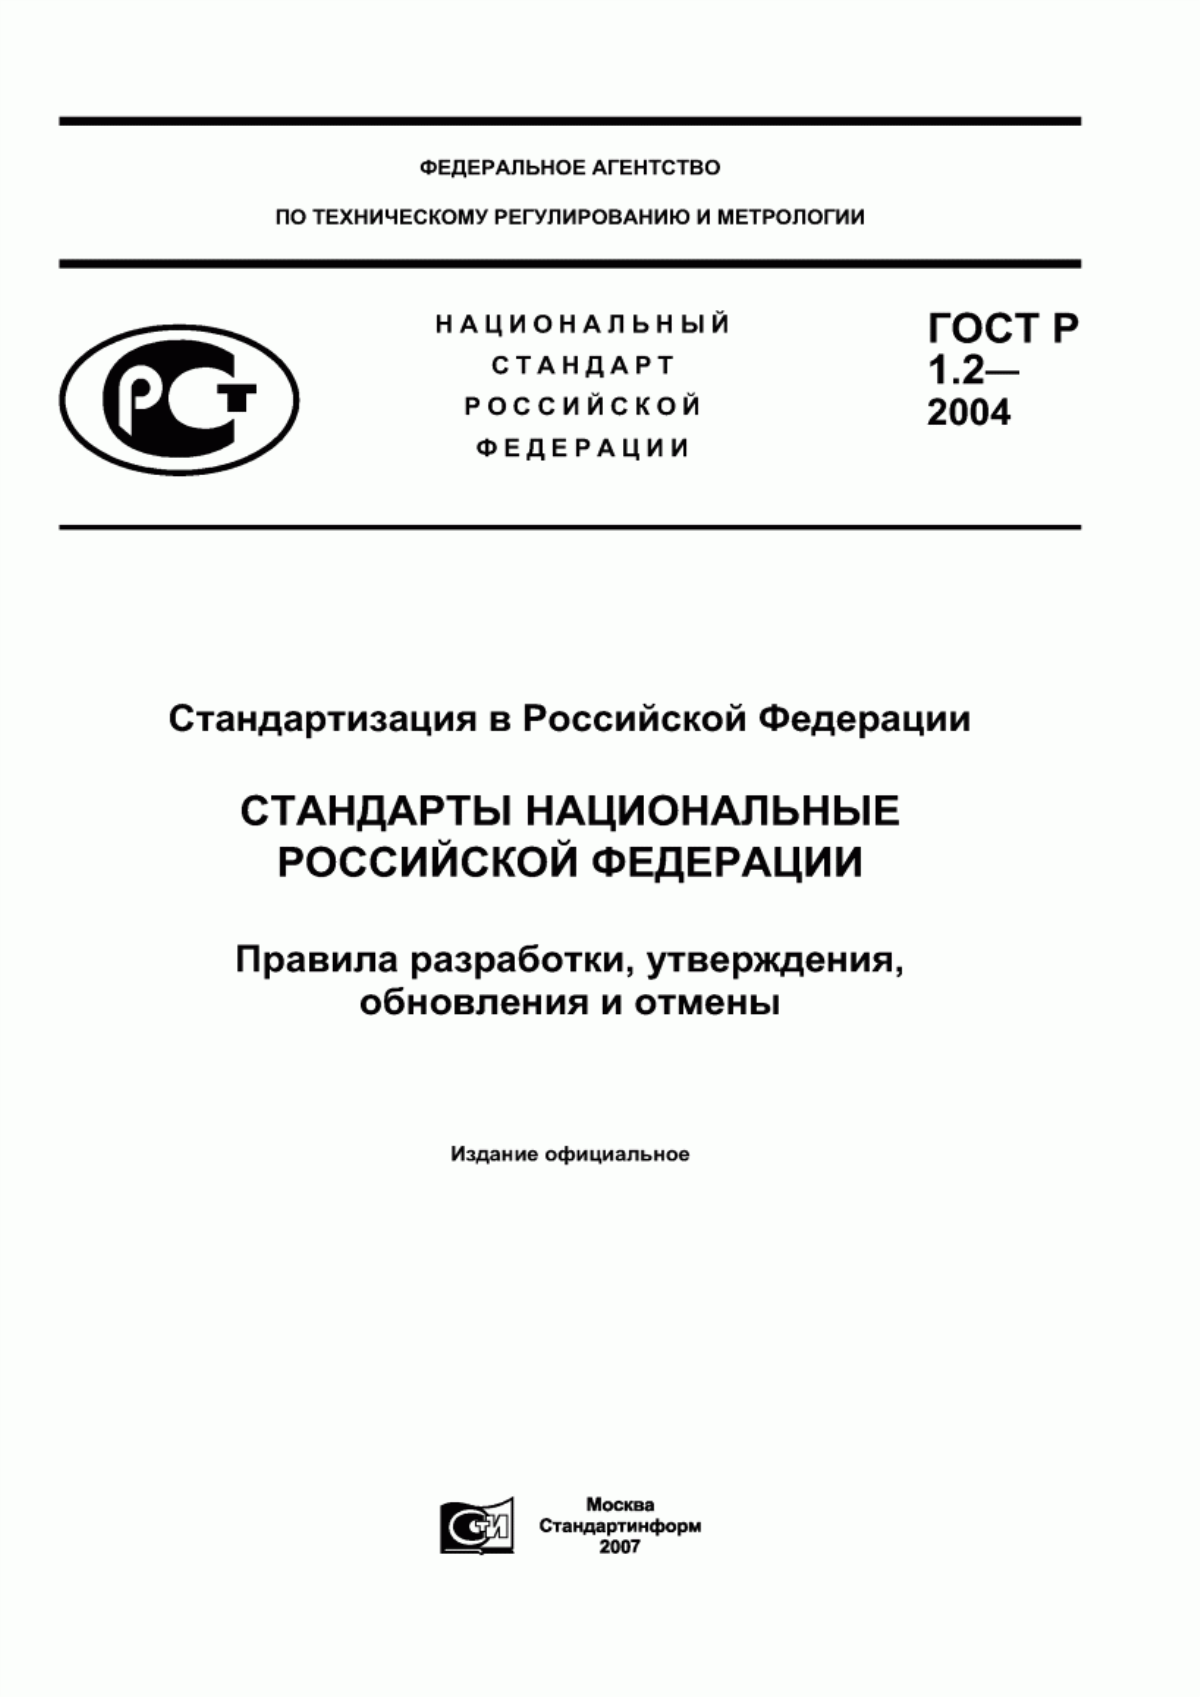 ГОСТ Р 1.2-2004 Стандартизация в Российской Федерации. Стандарты национальные Российской Федерации. Правила разработки, утверждения, обновления и отмены